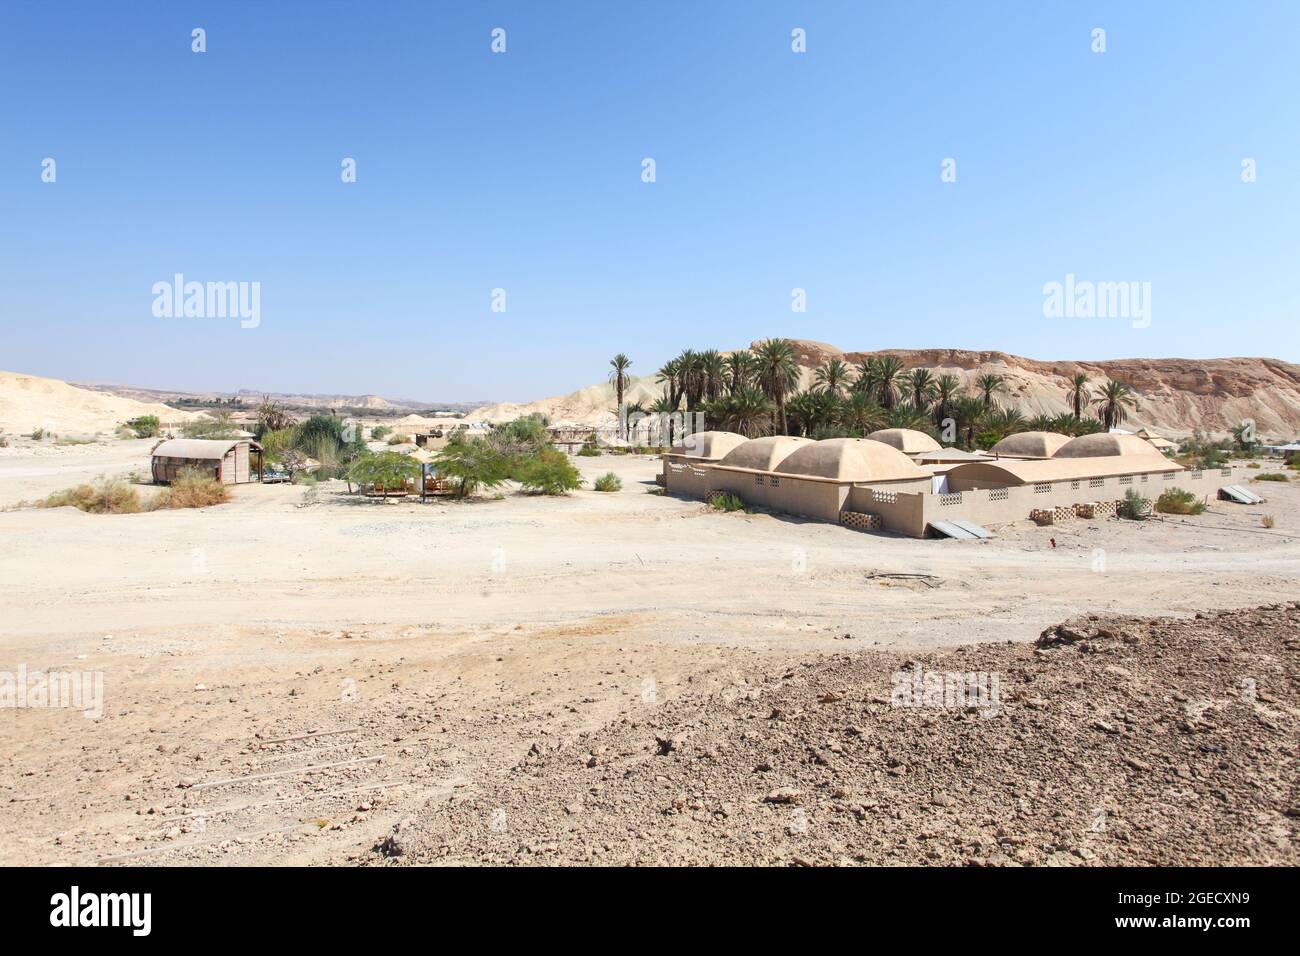 Paisaje desértico edificios de barro alrededor de un oasis. Fotografiado en Oriente Medio Foto de stock